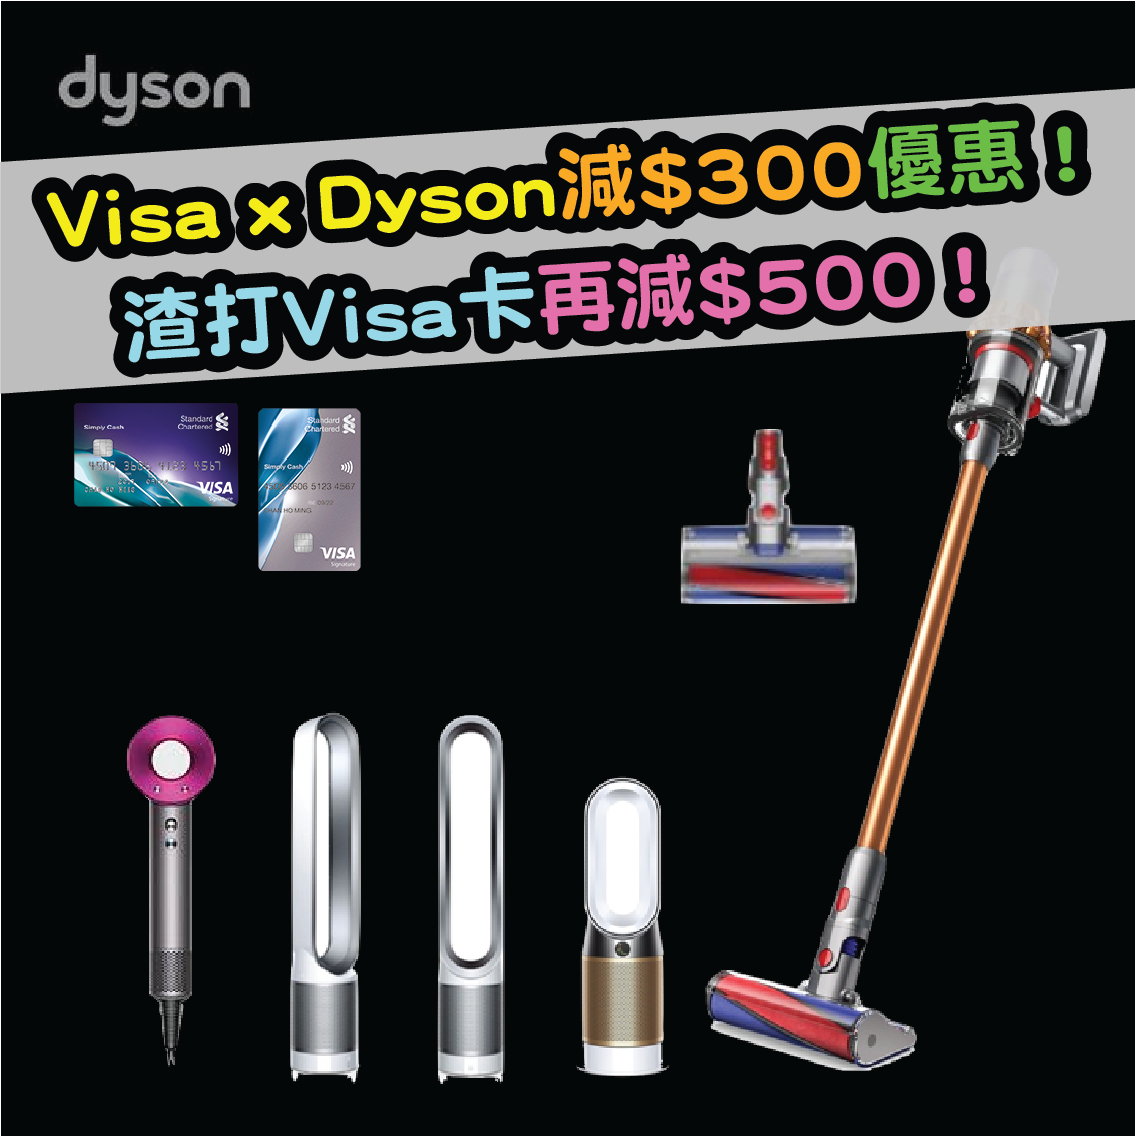 Visa x Dyson體驗店及網上商店即減港幣$300優惠！用渣打Visa卡更可即減港幣$500！